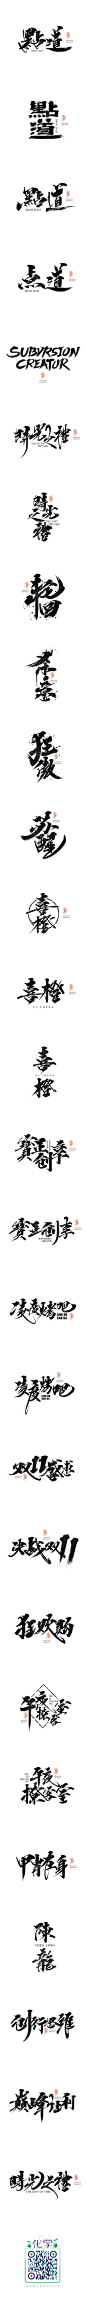 依然浚·书法字体·贰拾_字体传奇网-中国首个字体品牌设计师交流网 #字体#